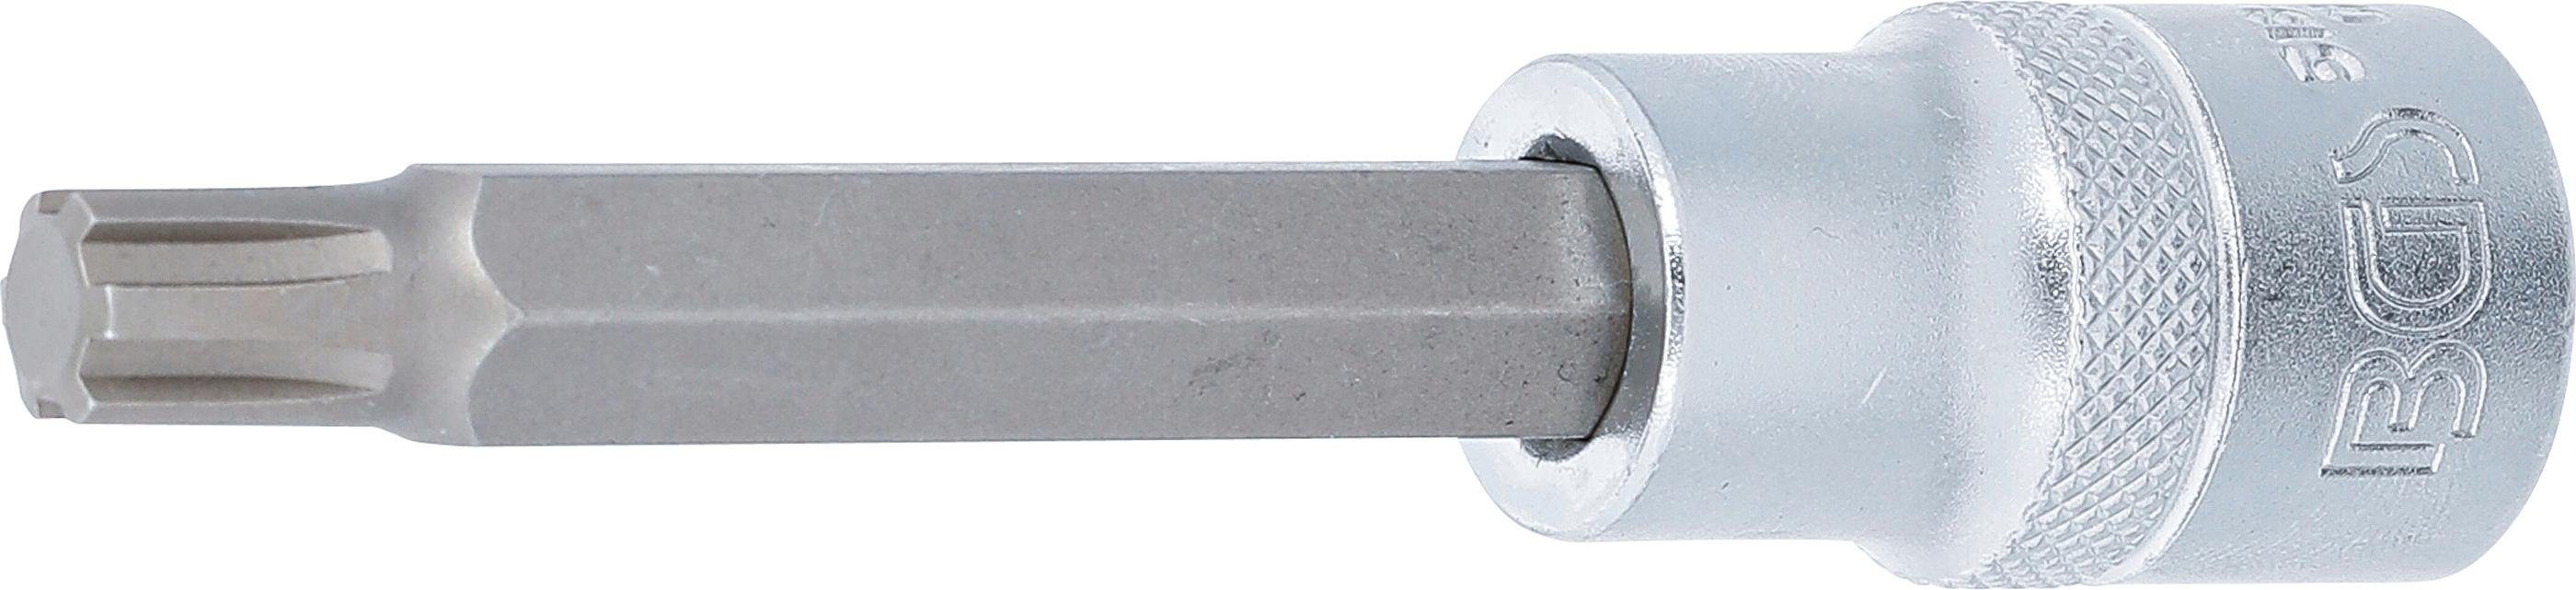 BGS technic Bit-Schraubendreher Bit-Einsatz, Länge 100 mm, Antrieb Innenvierkant 12,5 mm (1/2), Keil-Profil (für RIBE) M9